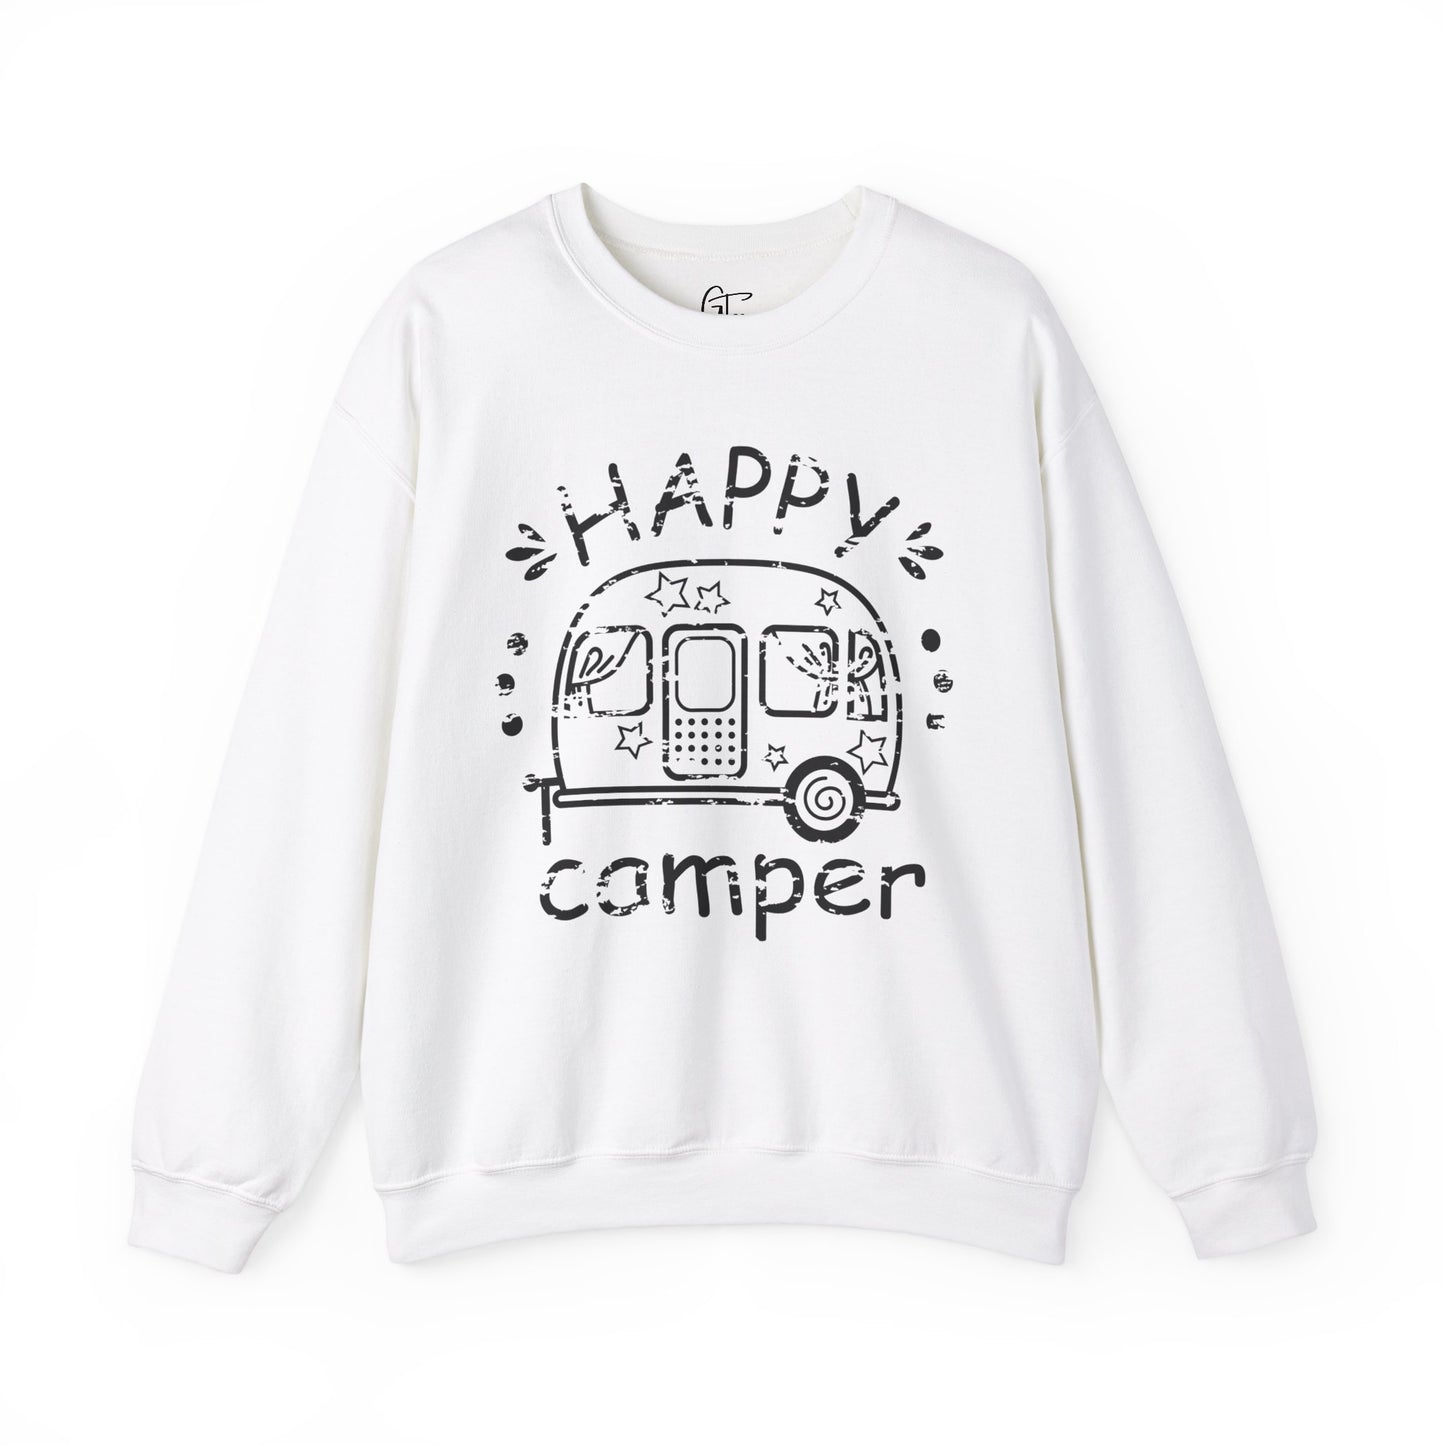 Happy Camper Grunge Sweatshirt